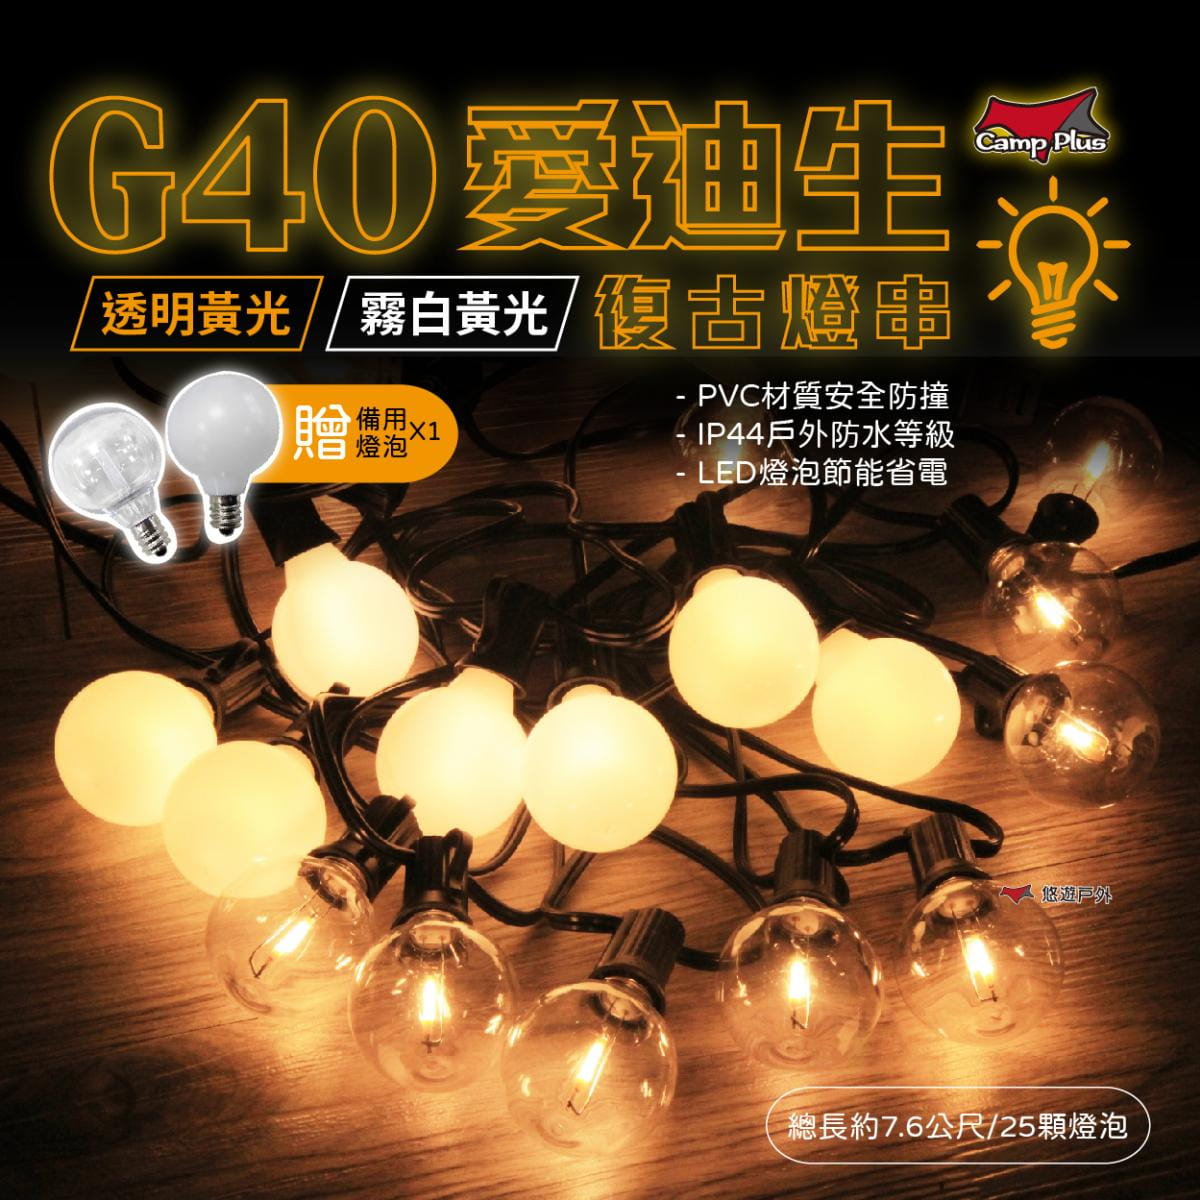 【Camp Plus】G40 愛迪生串燈 霧白暖黃/透明暖黃 悠遊戶外 1